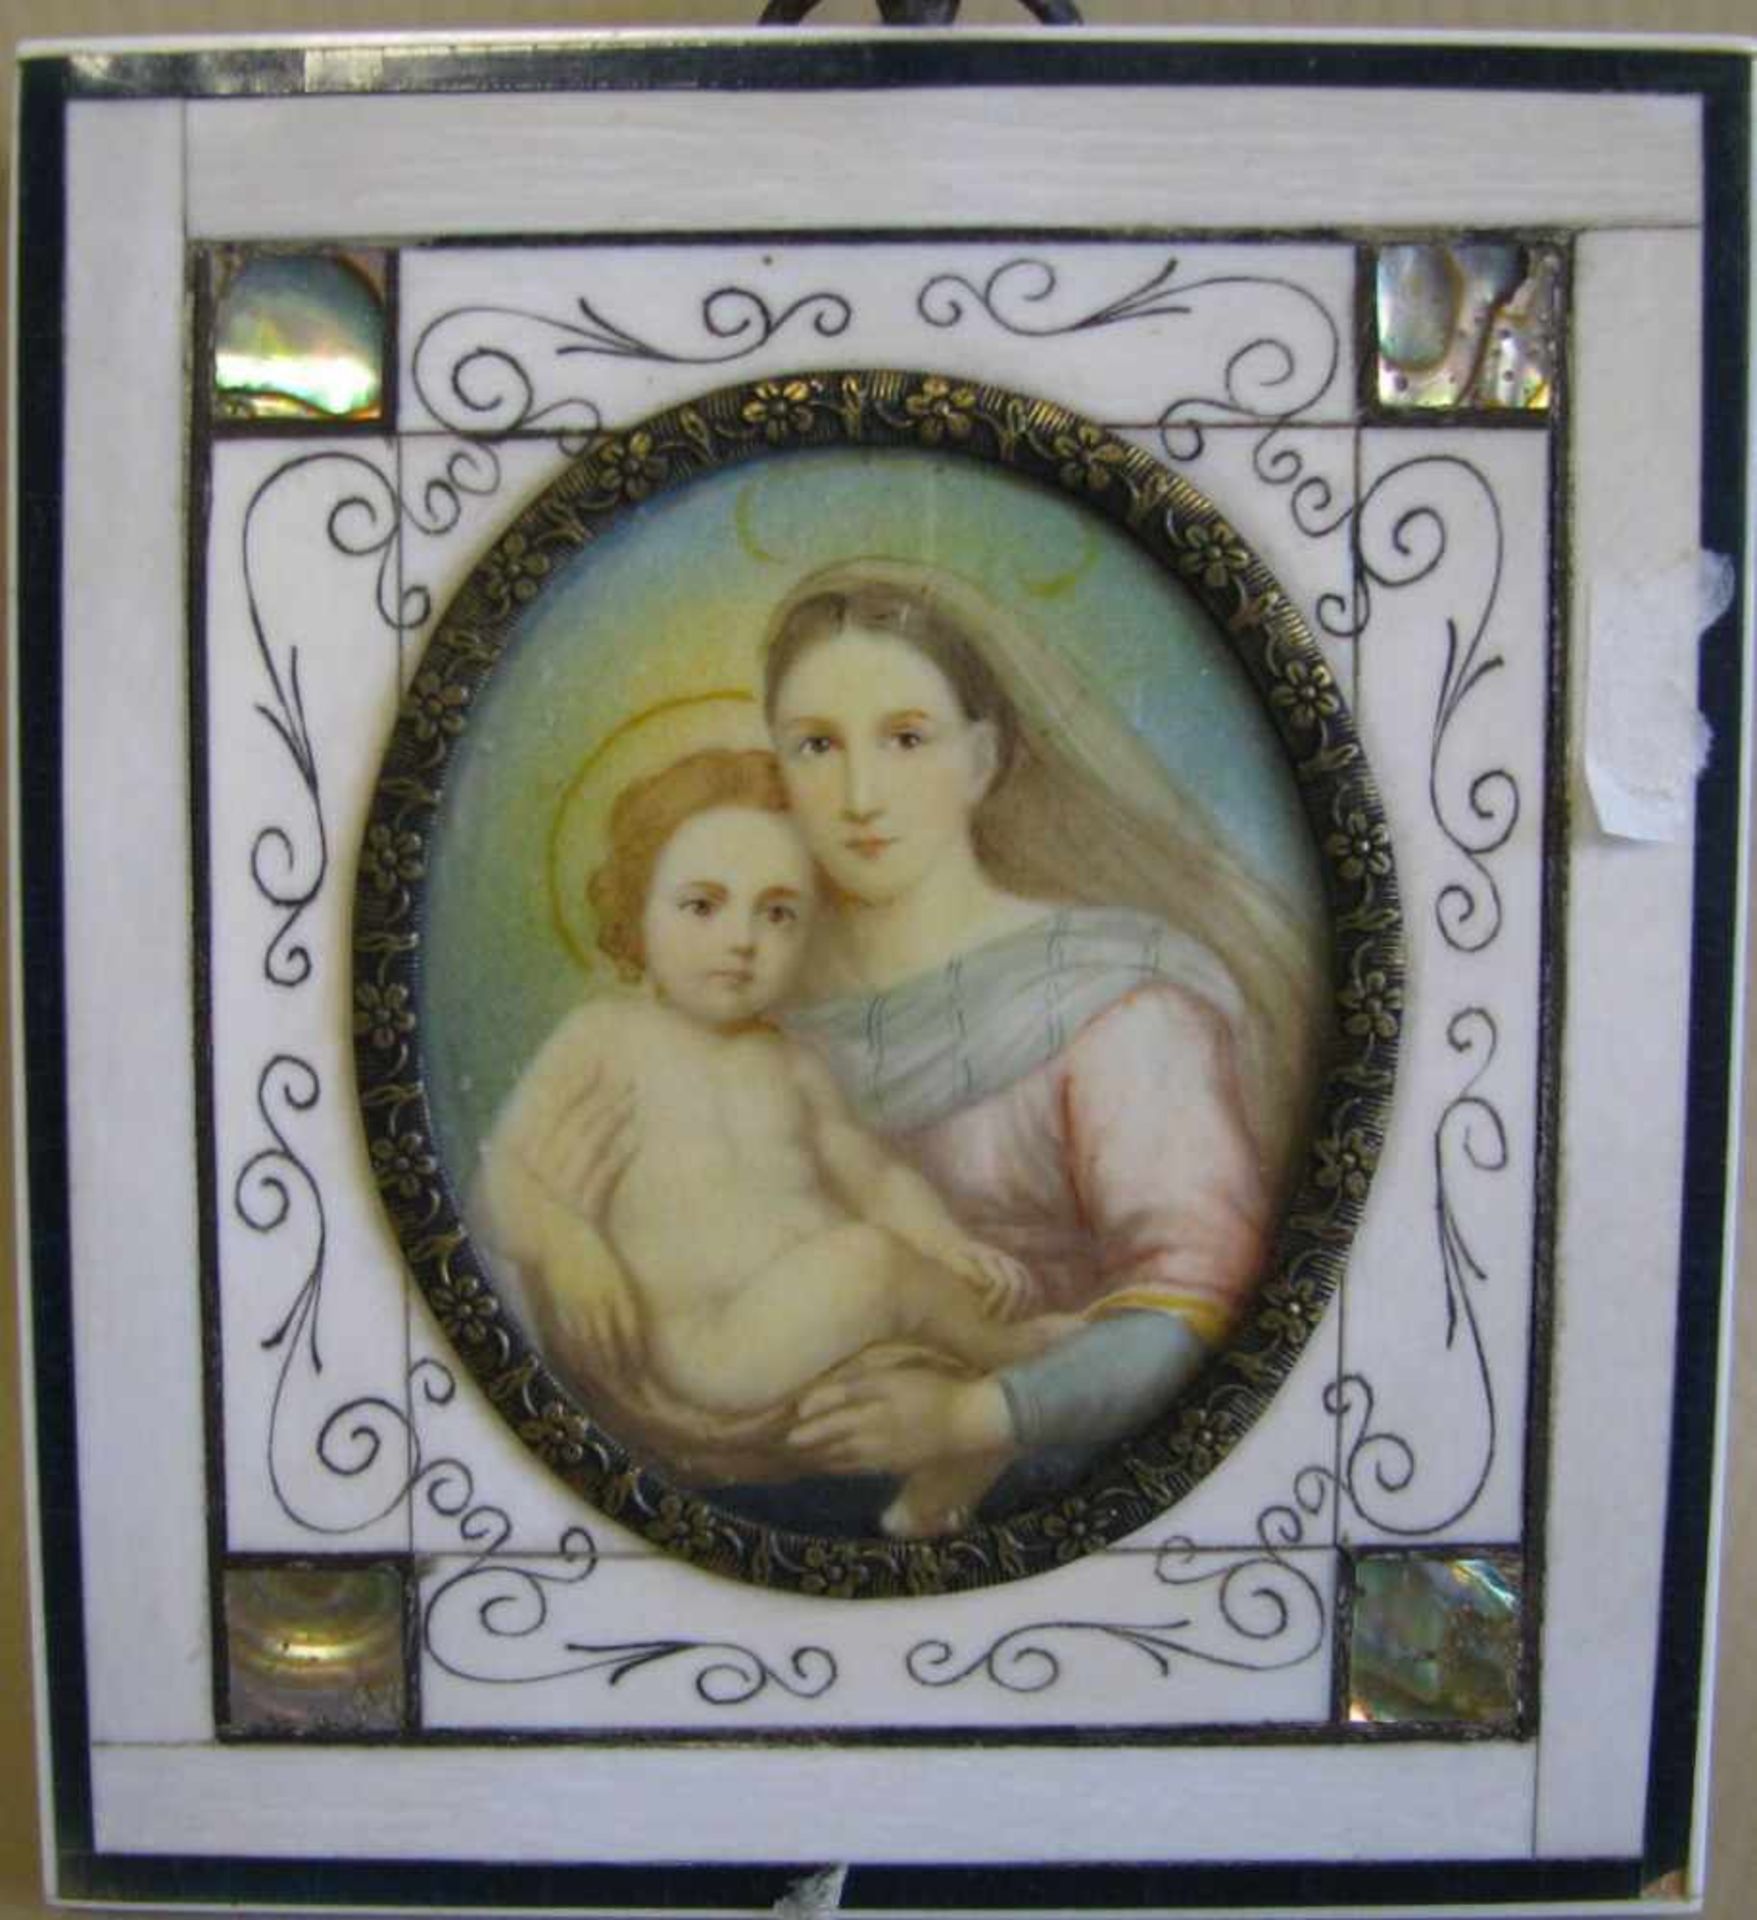 Miniatur, 'Maria mit Kind', 1. Hälfte 20. Jahrhundert, 9,5 x 10,5 cm, Elfenbeinrahmen.